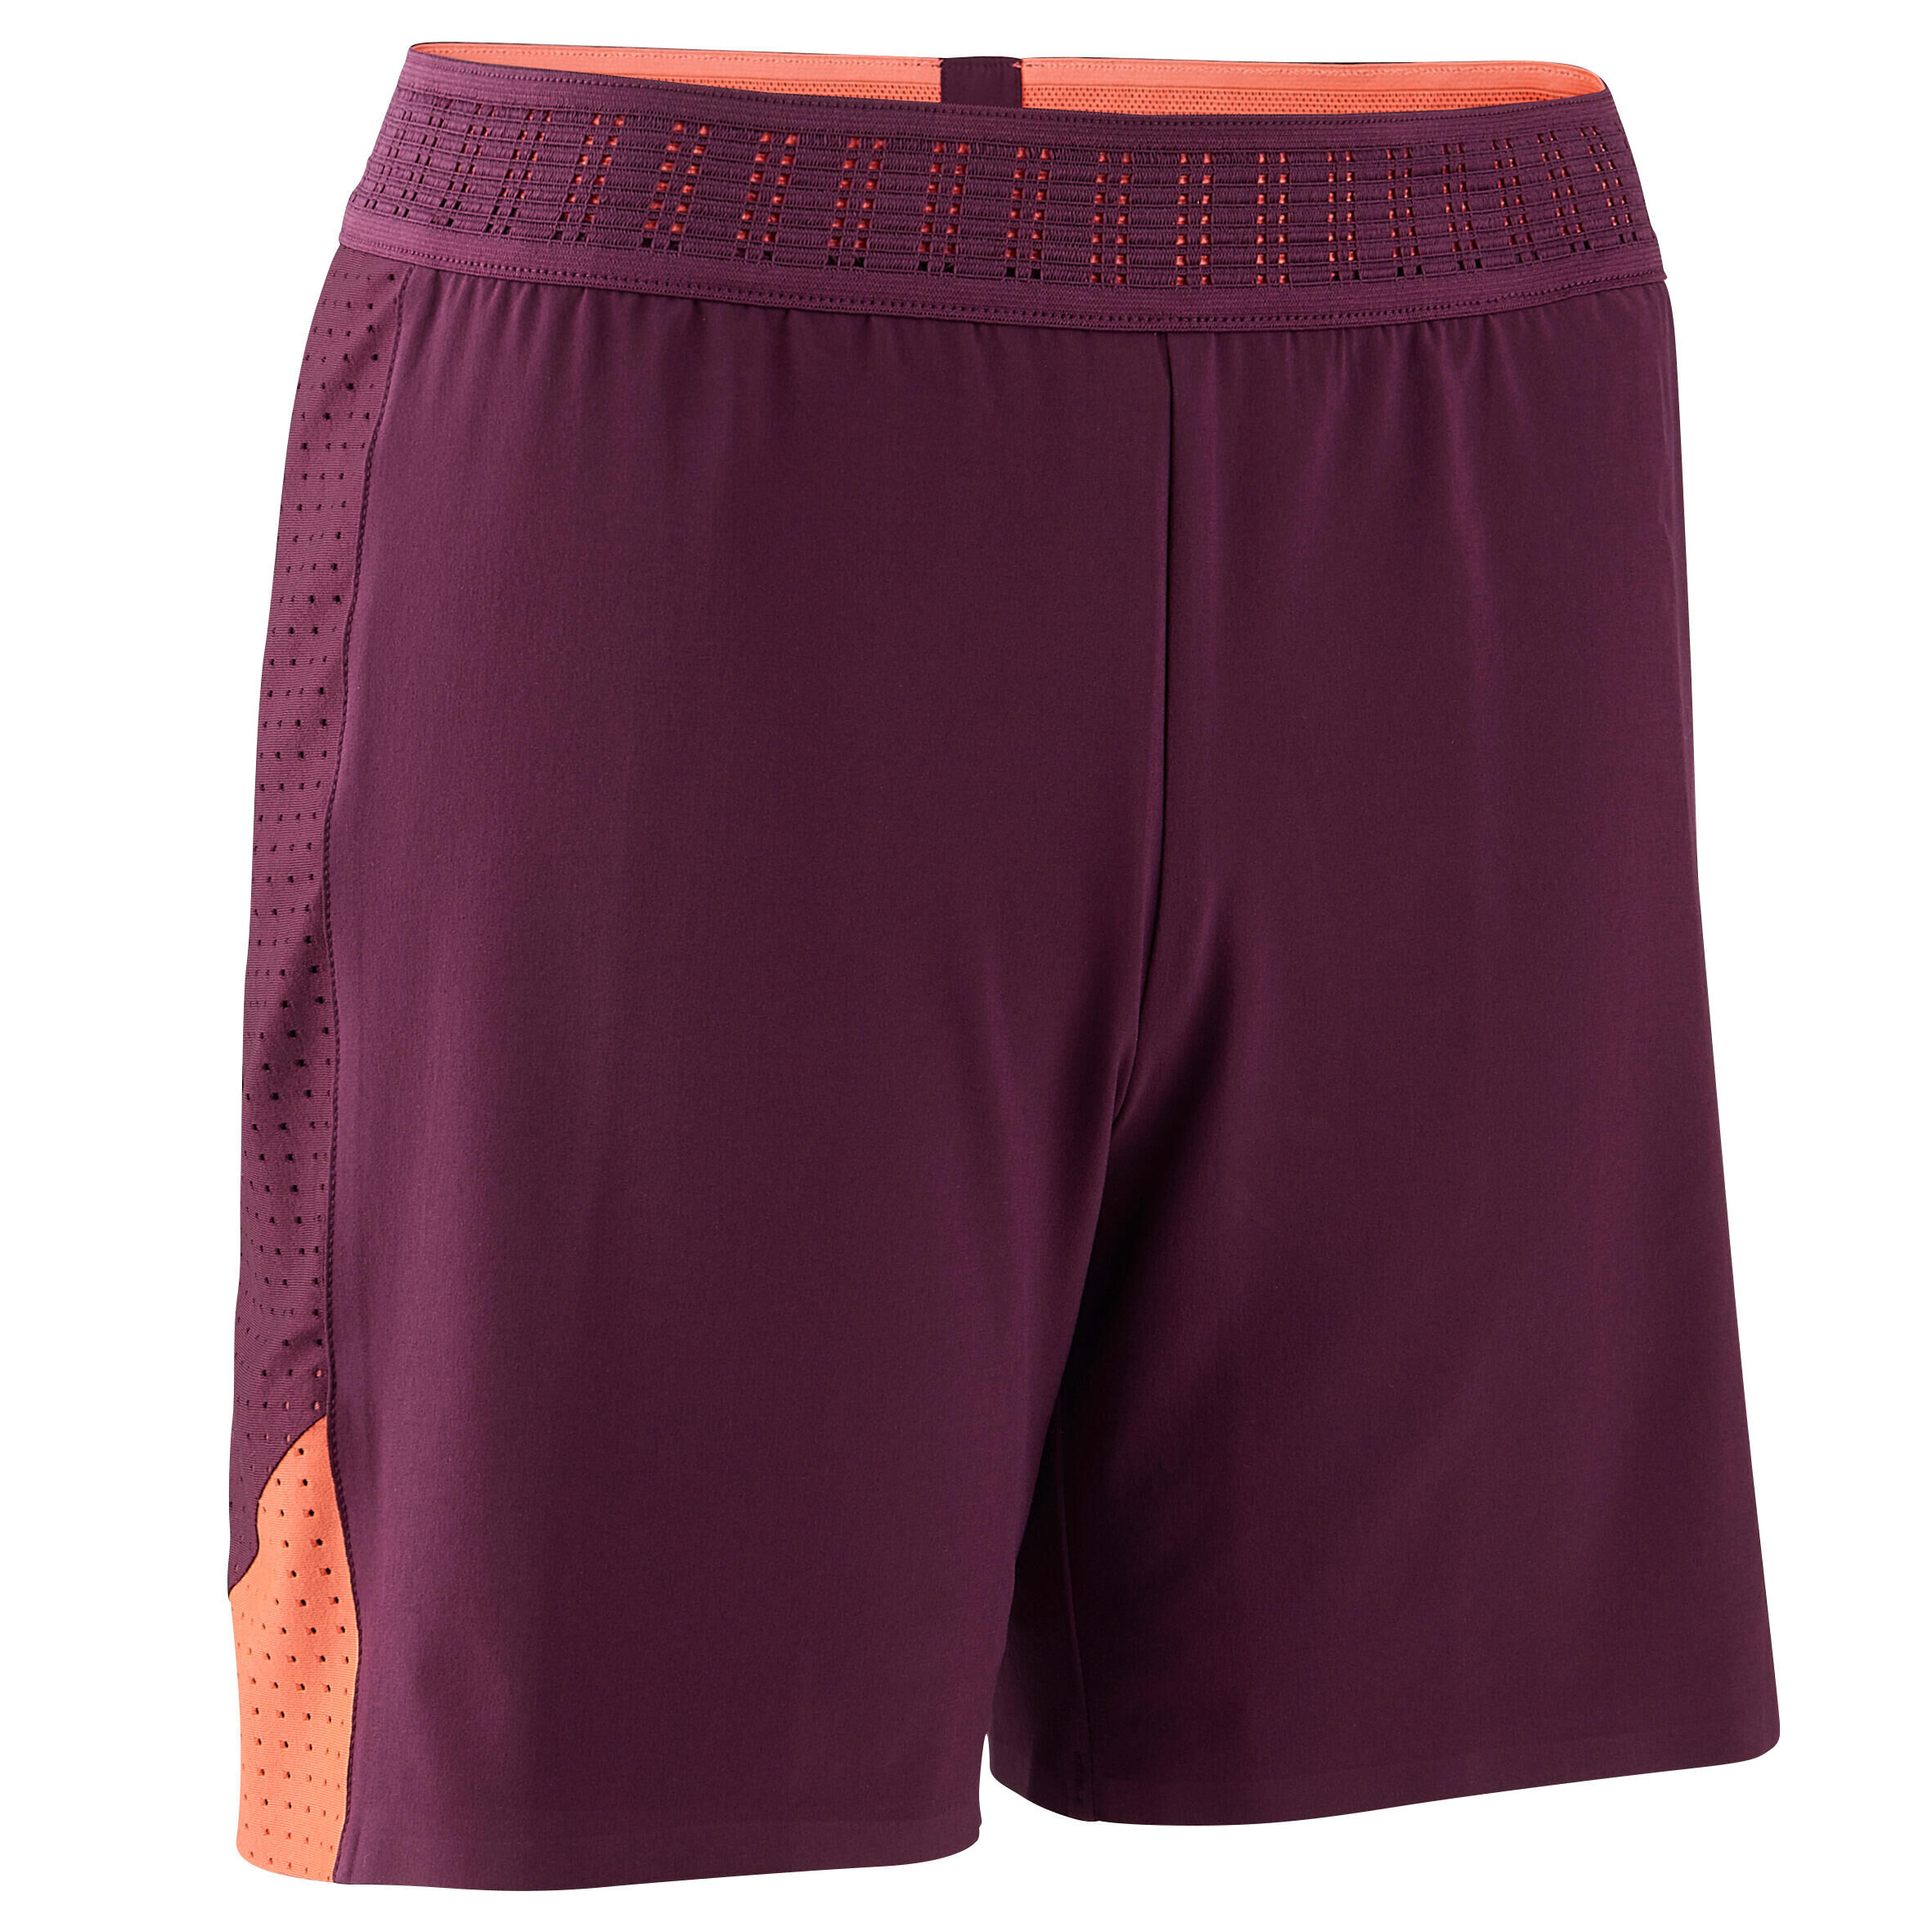 KIPSTA Women's Football Shorts F900 - Purple